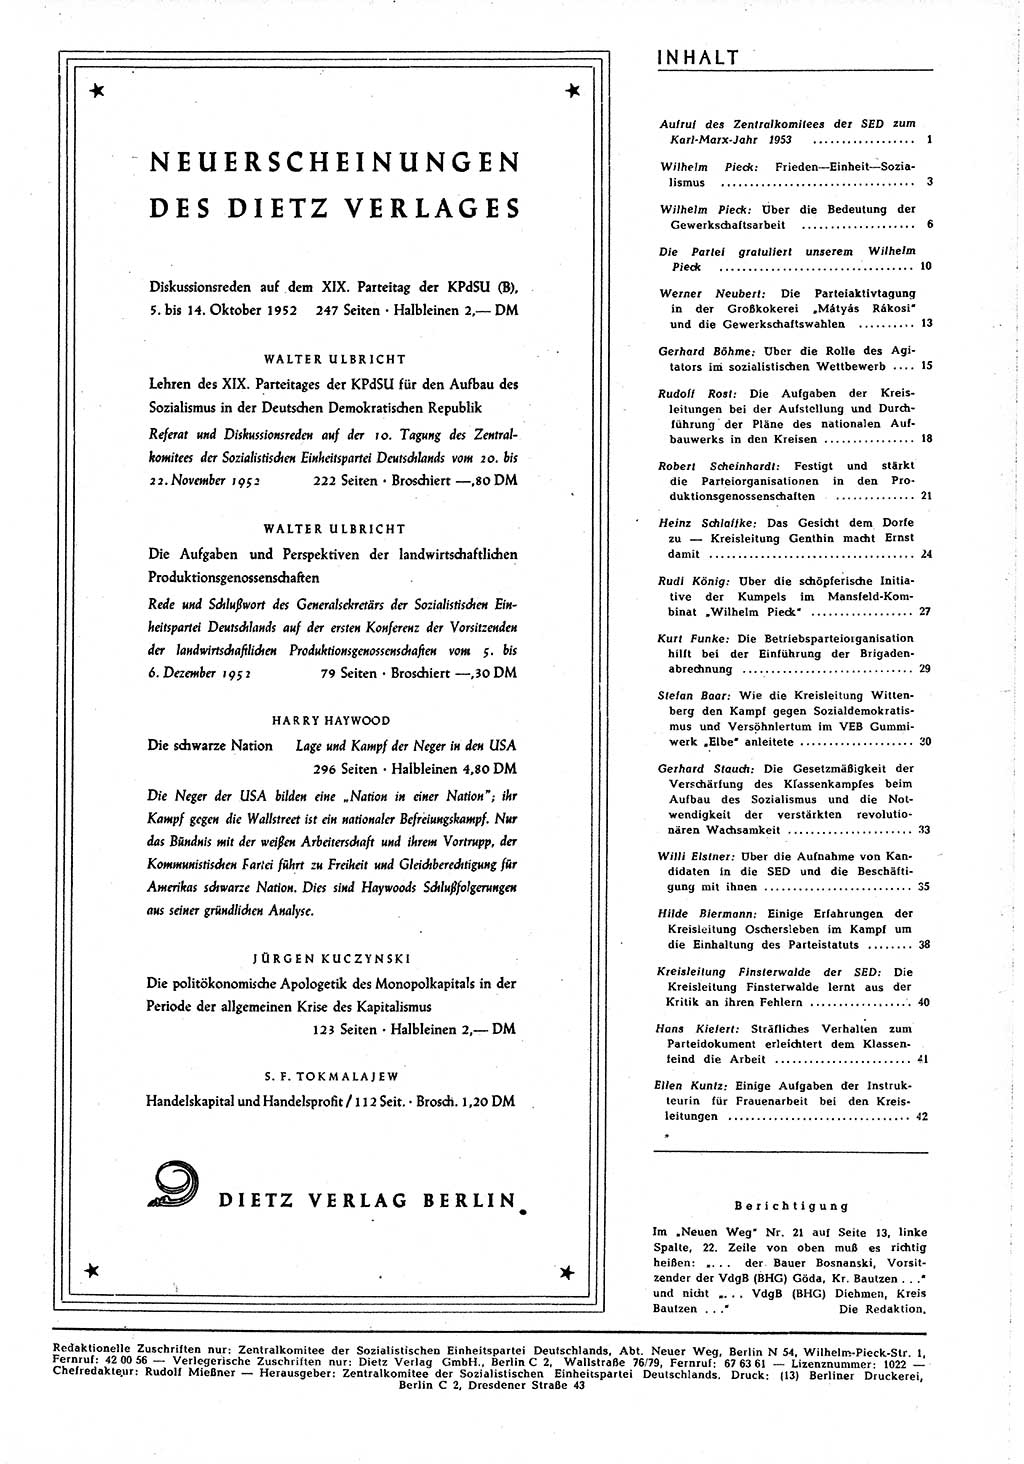 Neuer Weg (NW), Organ des Zentralkomitees (ZK) [Sozialistische Einheitspartei Deutschlands (SED)] für alle Parteiarbeiter, 8. Jahrgang [Deutsche Demokratische Republik (DDR)] 1953, Heft 1/45 (NW ZK SED DDR 1953, H. 1/45)